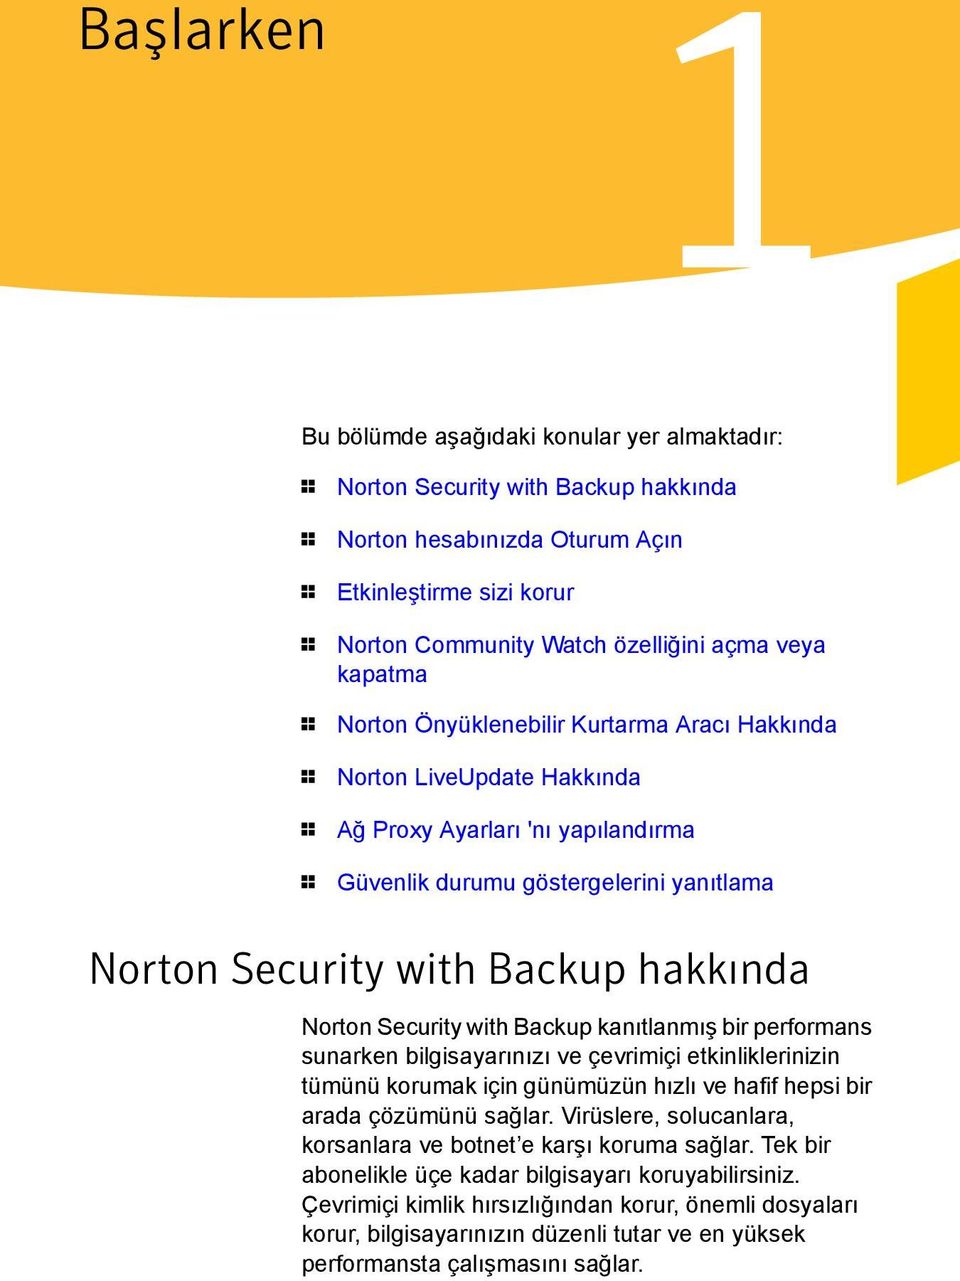 hakkında Norton Security with Backup kanıtlanmış bir performans sunarken bilgisayarınızı ve çevrimiçi etkinliklerinizin tümünü korumak için günümüzün hızlı ve hafif hepsi bir arada çözümünü sağlar.